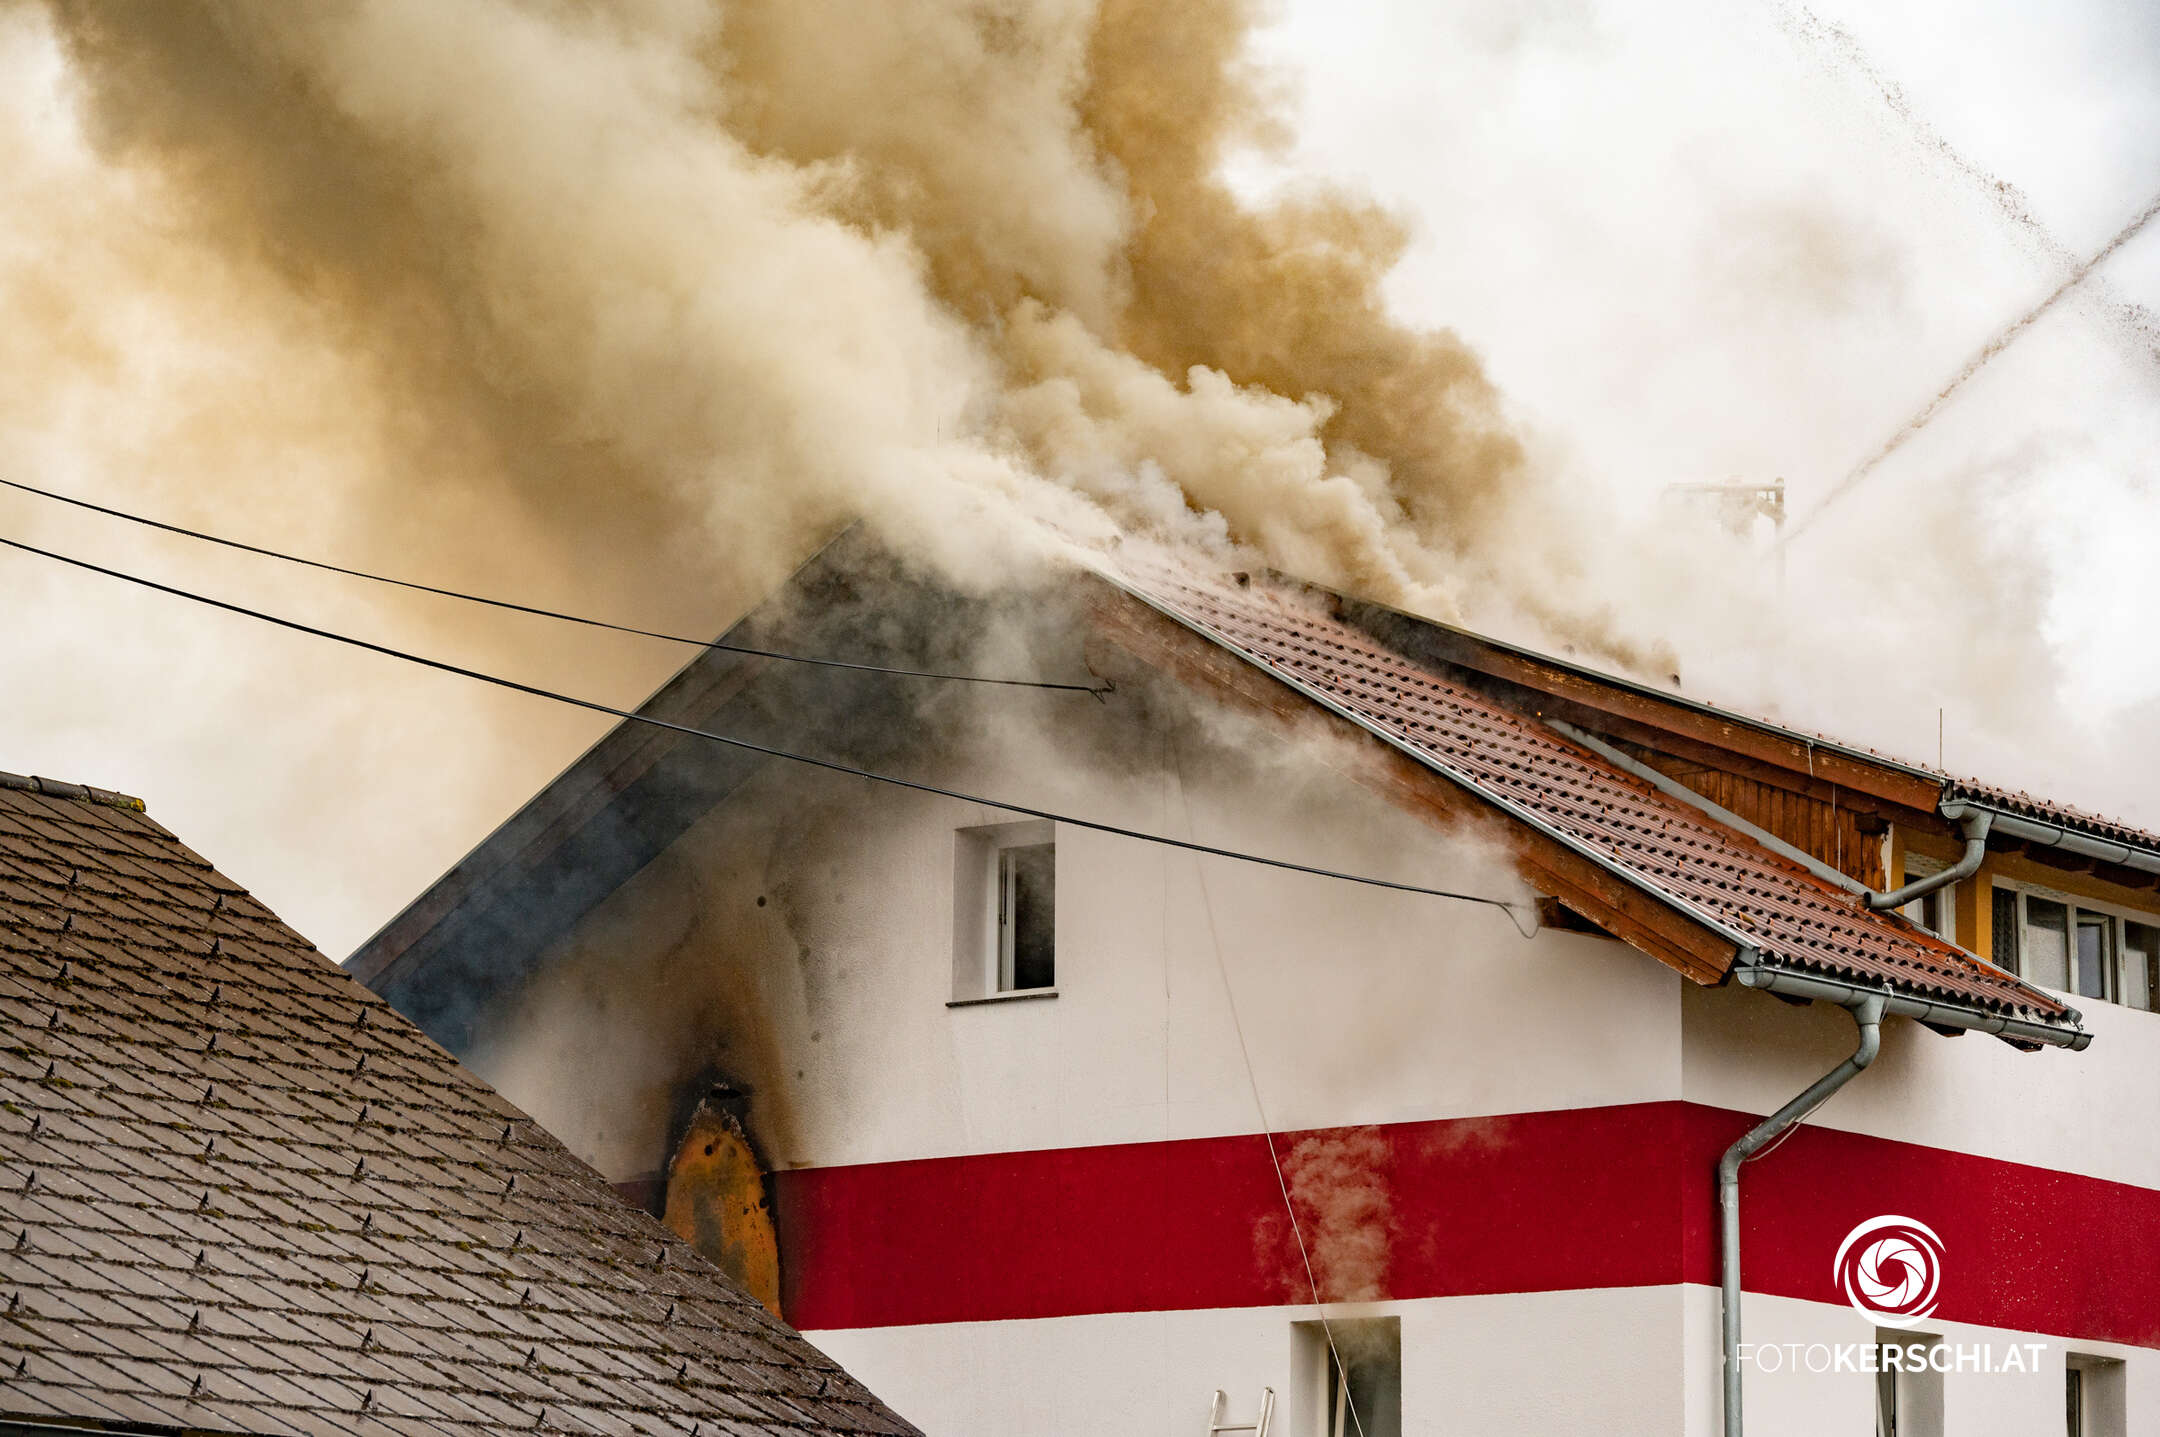 Dachstuhl von Einfamilienhaus brannte